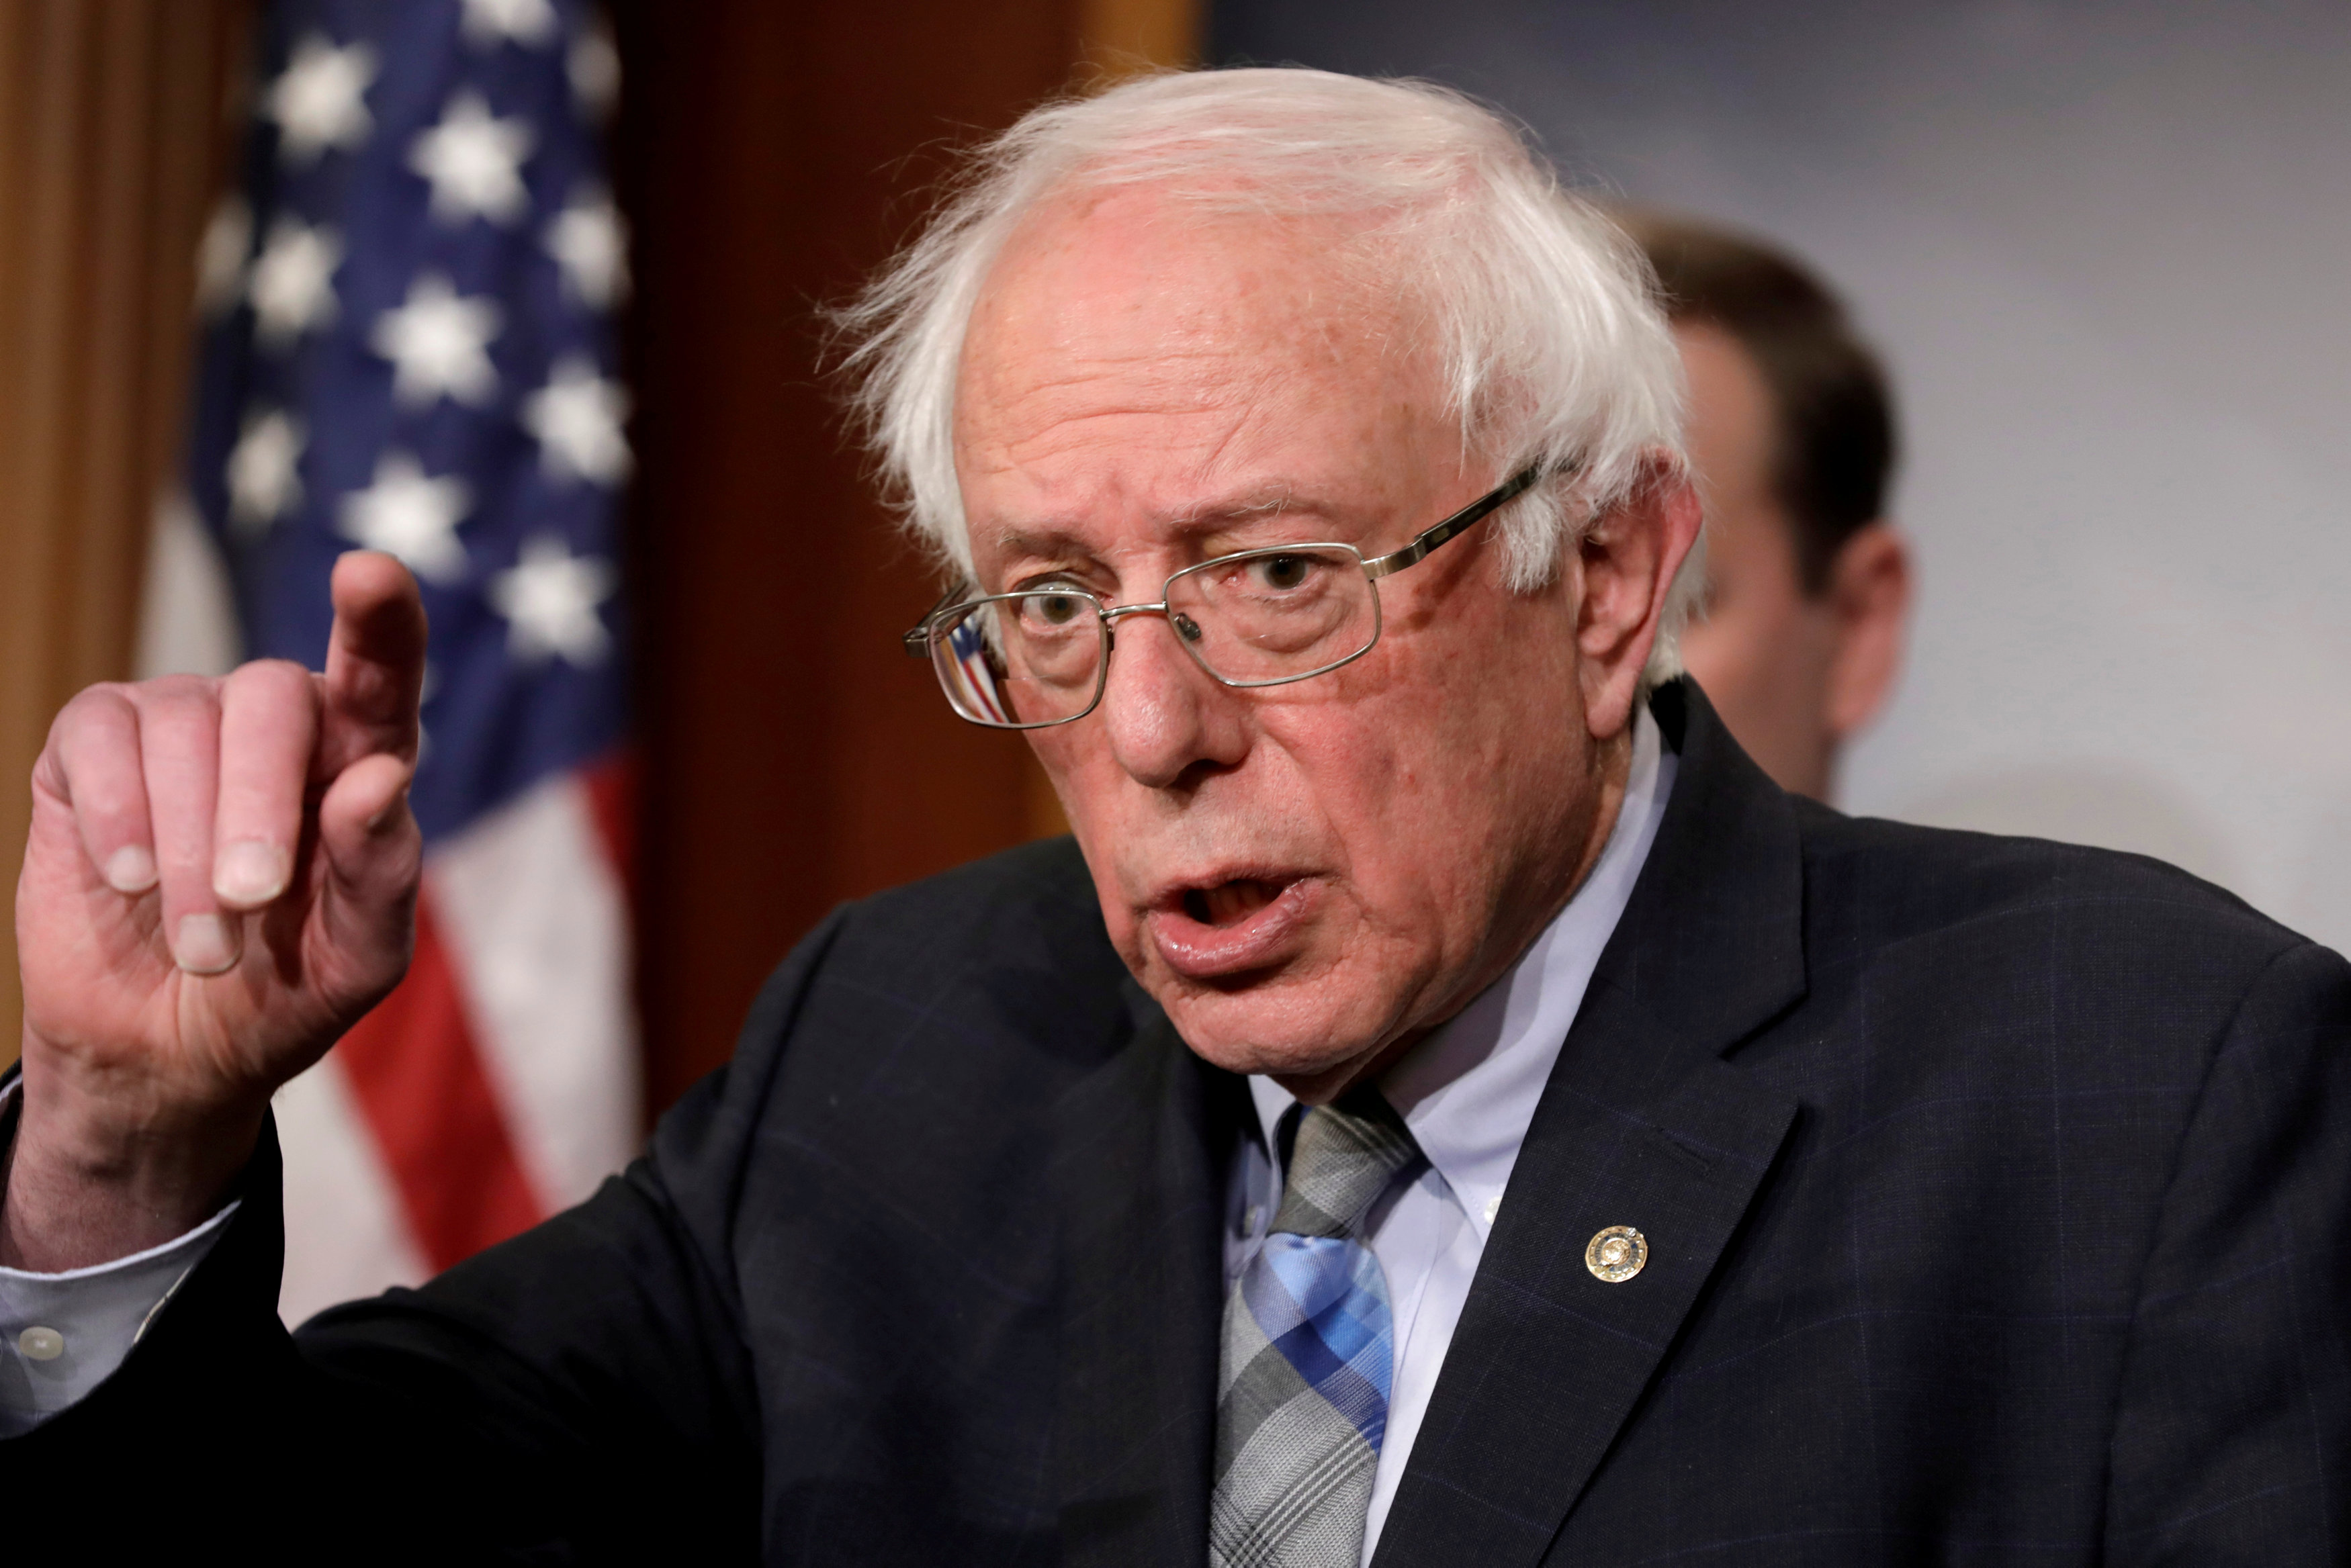 Bernie Sanders: Comparar mi socialismo con el del dictador venezolano es “extremadamente injusto”